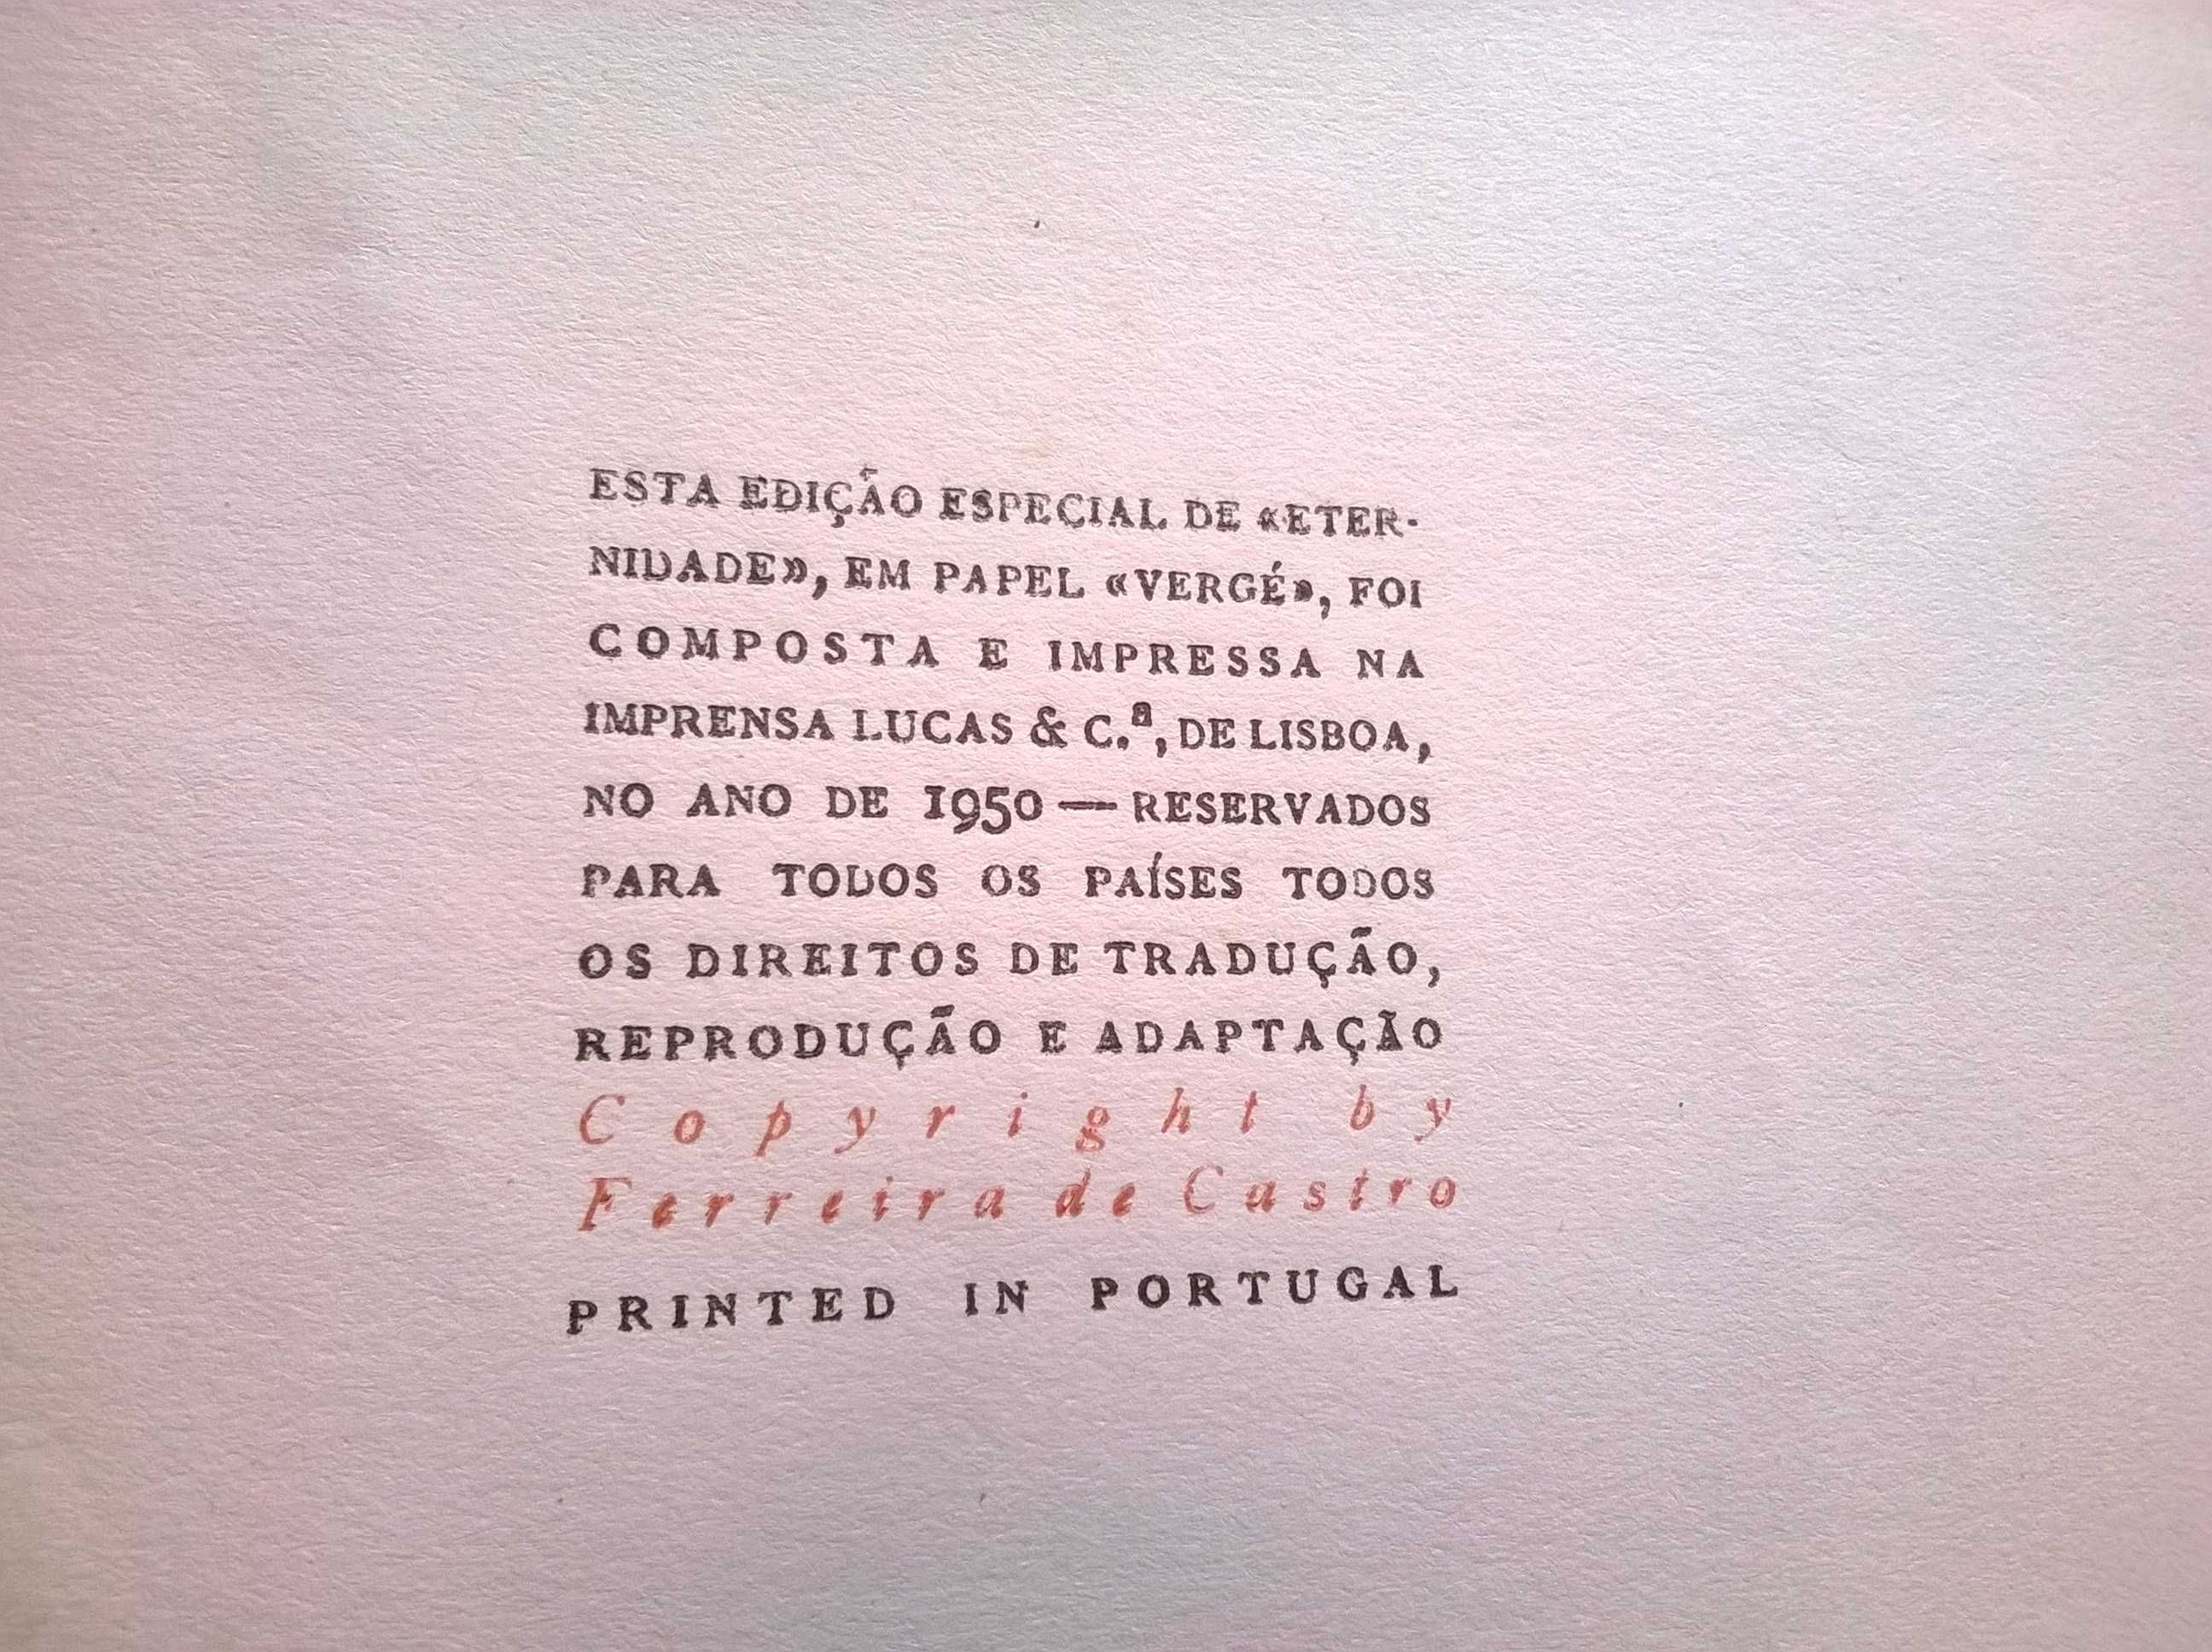 "Eternidade" (ed. 1950) - Ferreira de Castro